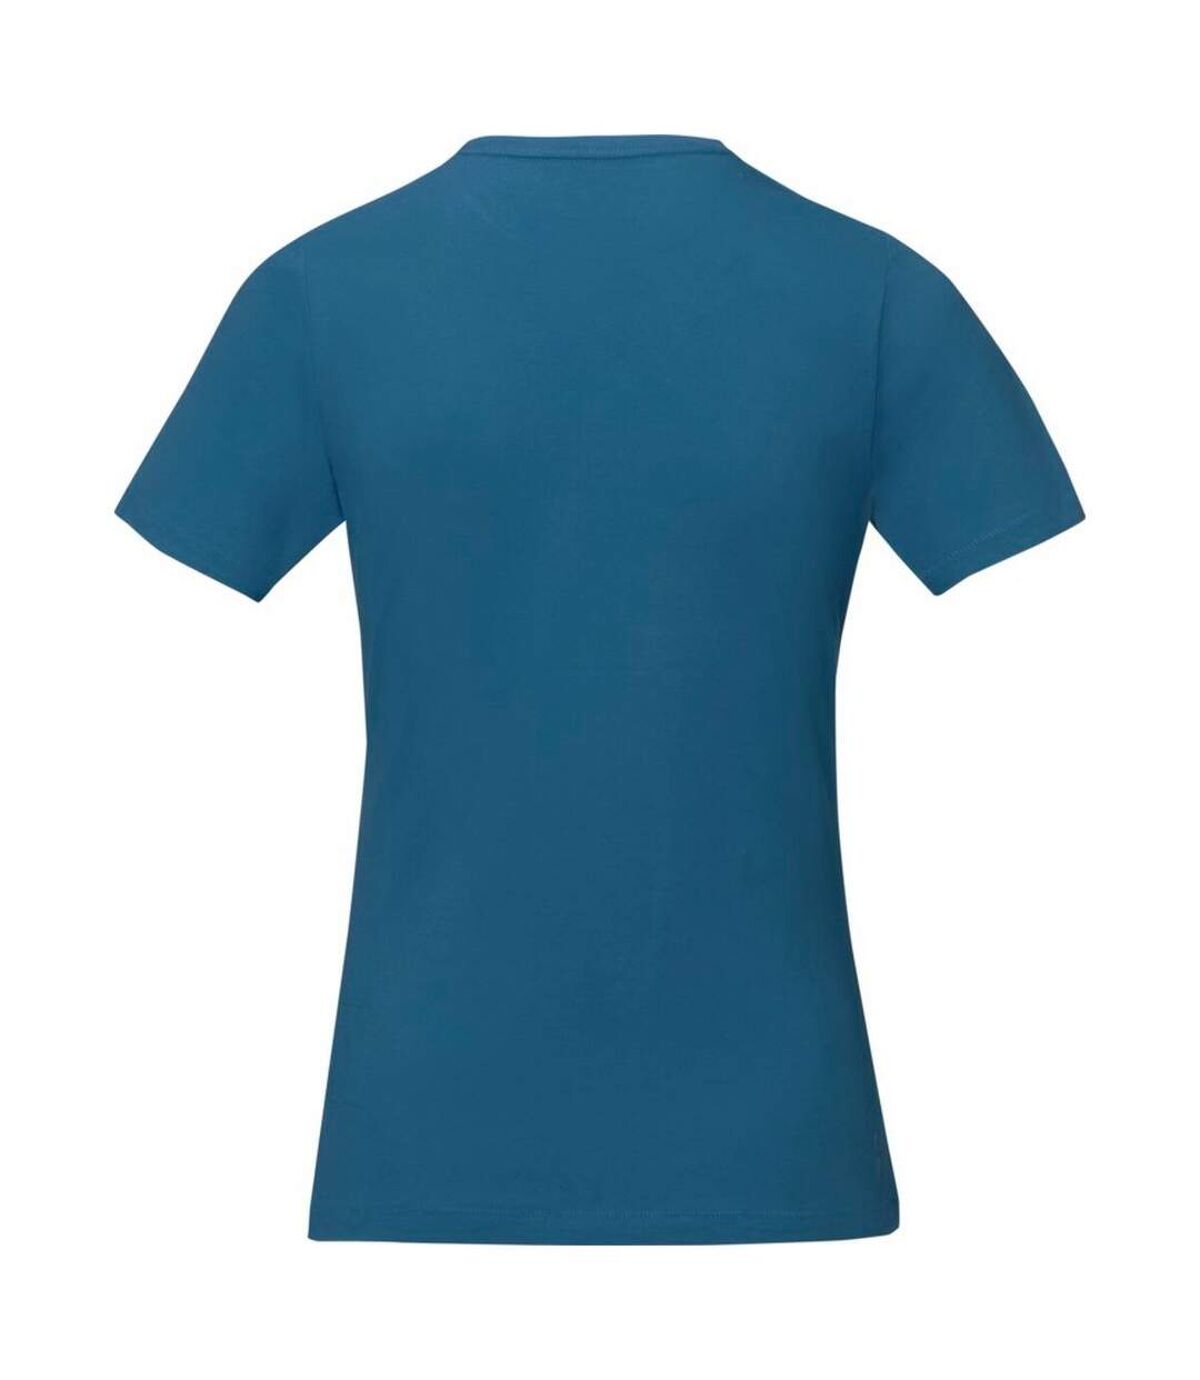 Elevate - T-shirt manches courtes Nanaimo - Femme (Bleu) - UTPF1808